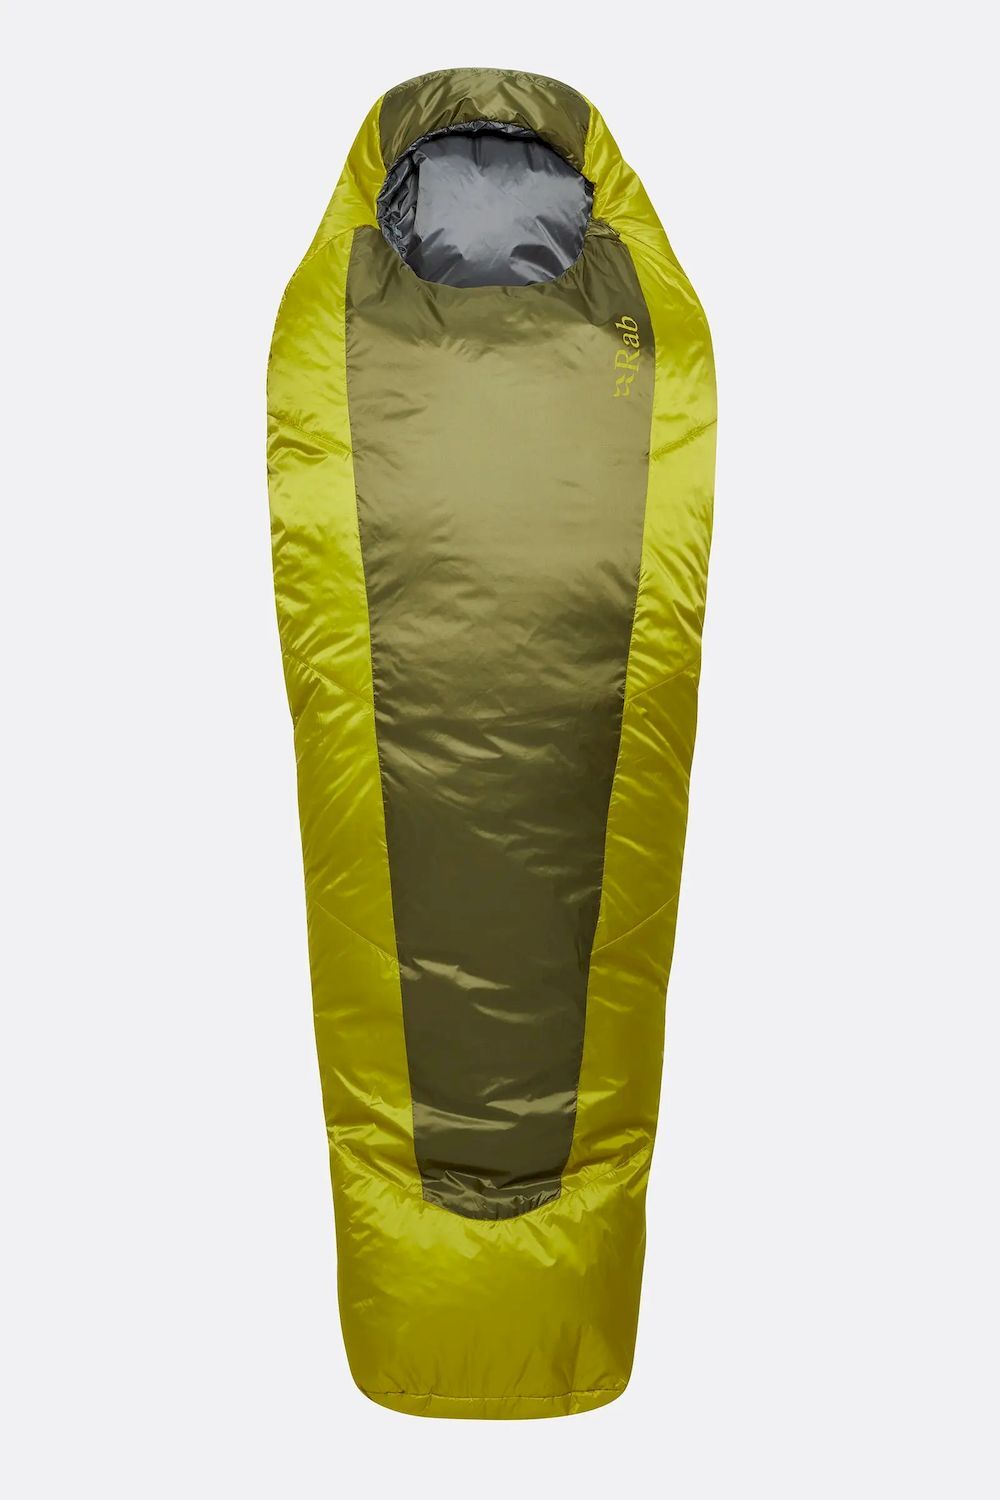 Rab Solar Eco 0 - Sleeping bag - 0